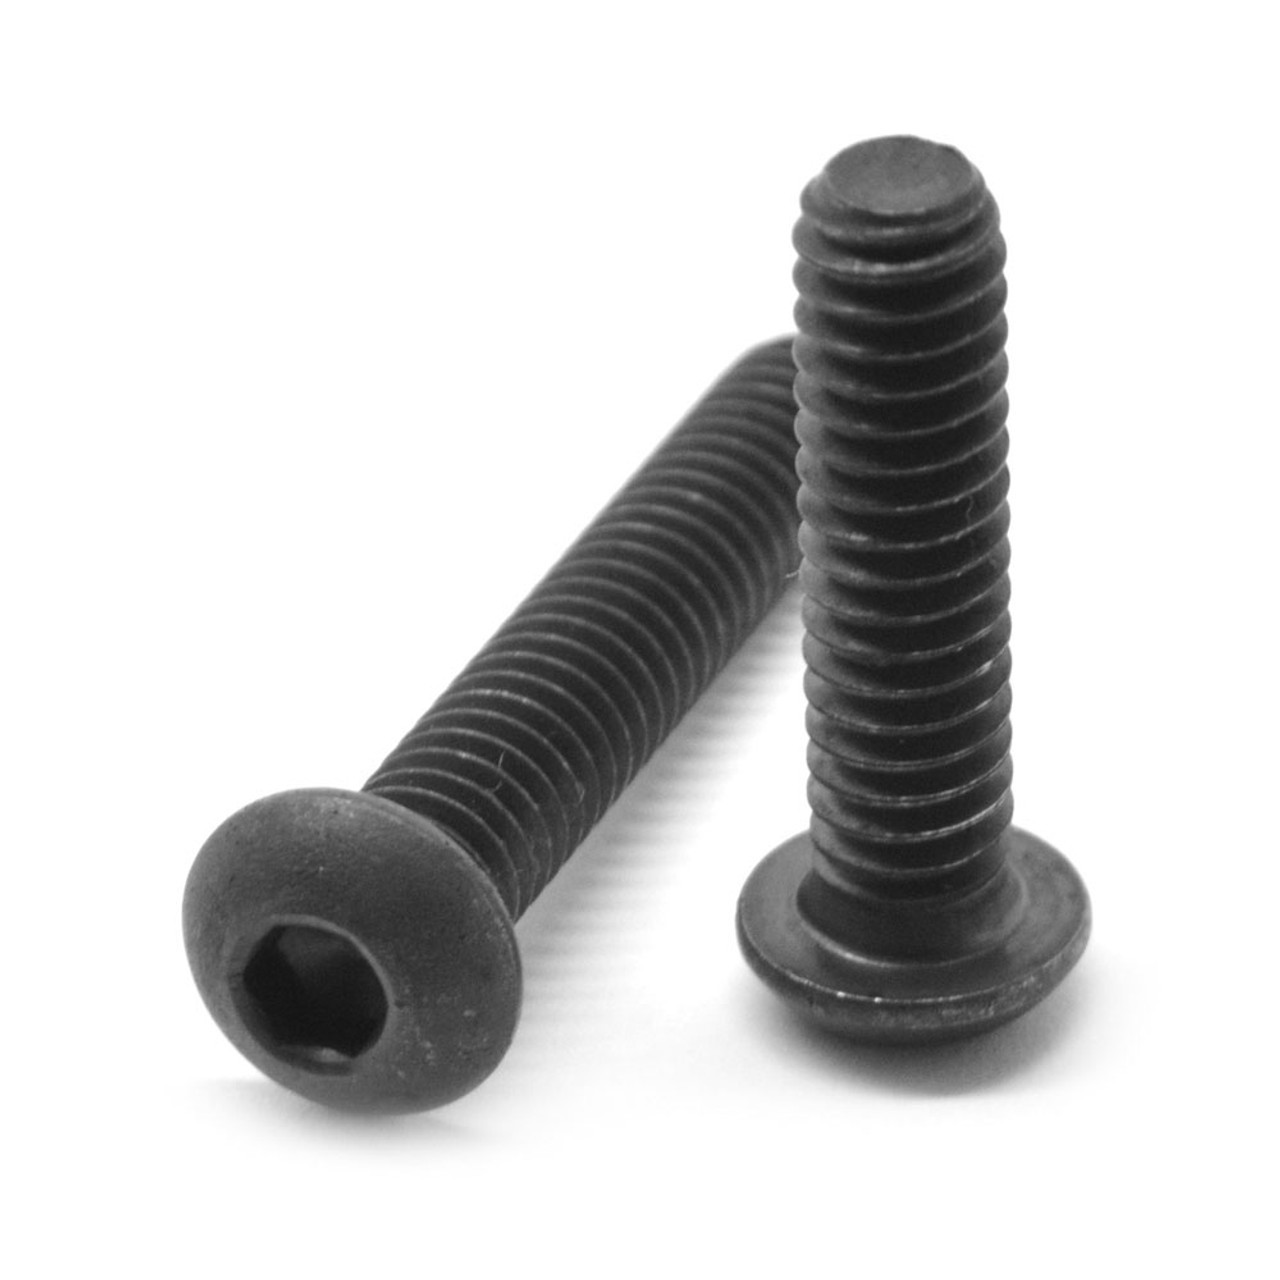 #0-80 x 3/16" (FT) Fine Thread Socket Button Head Cap Screw Alloy Steel Black Oxide